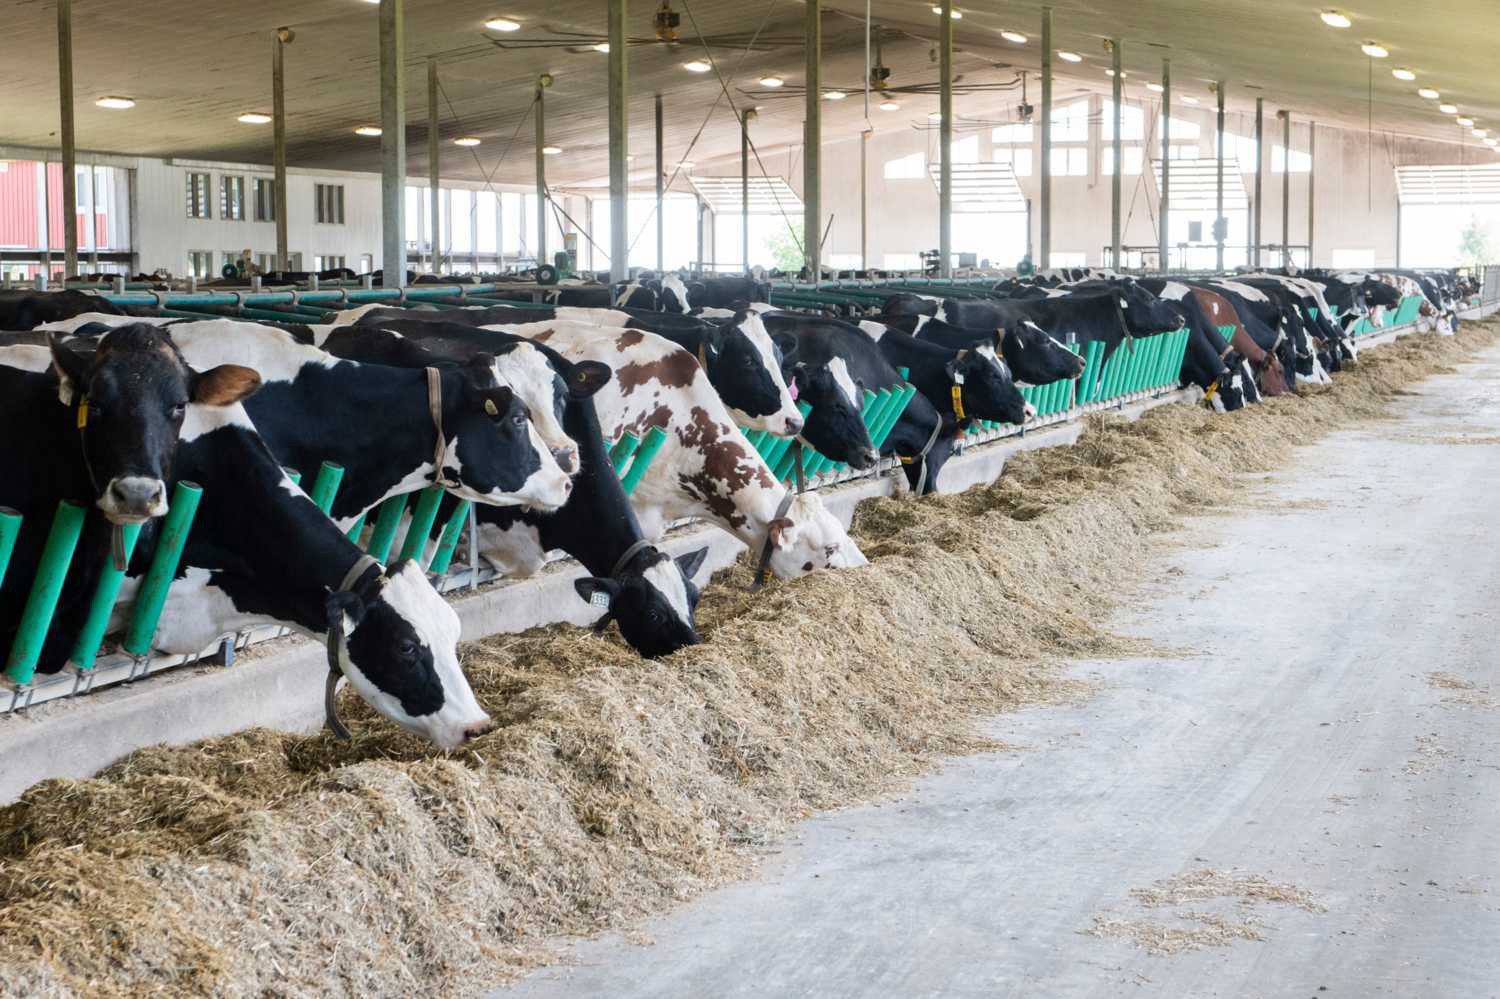 Cows in the barn of Van der Meulen Dairy